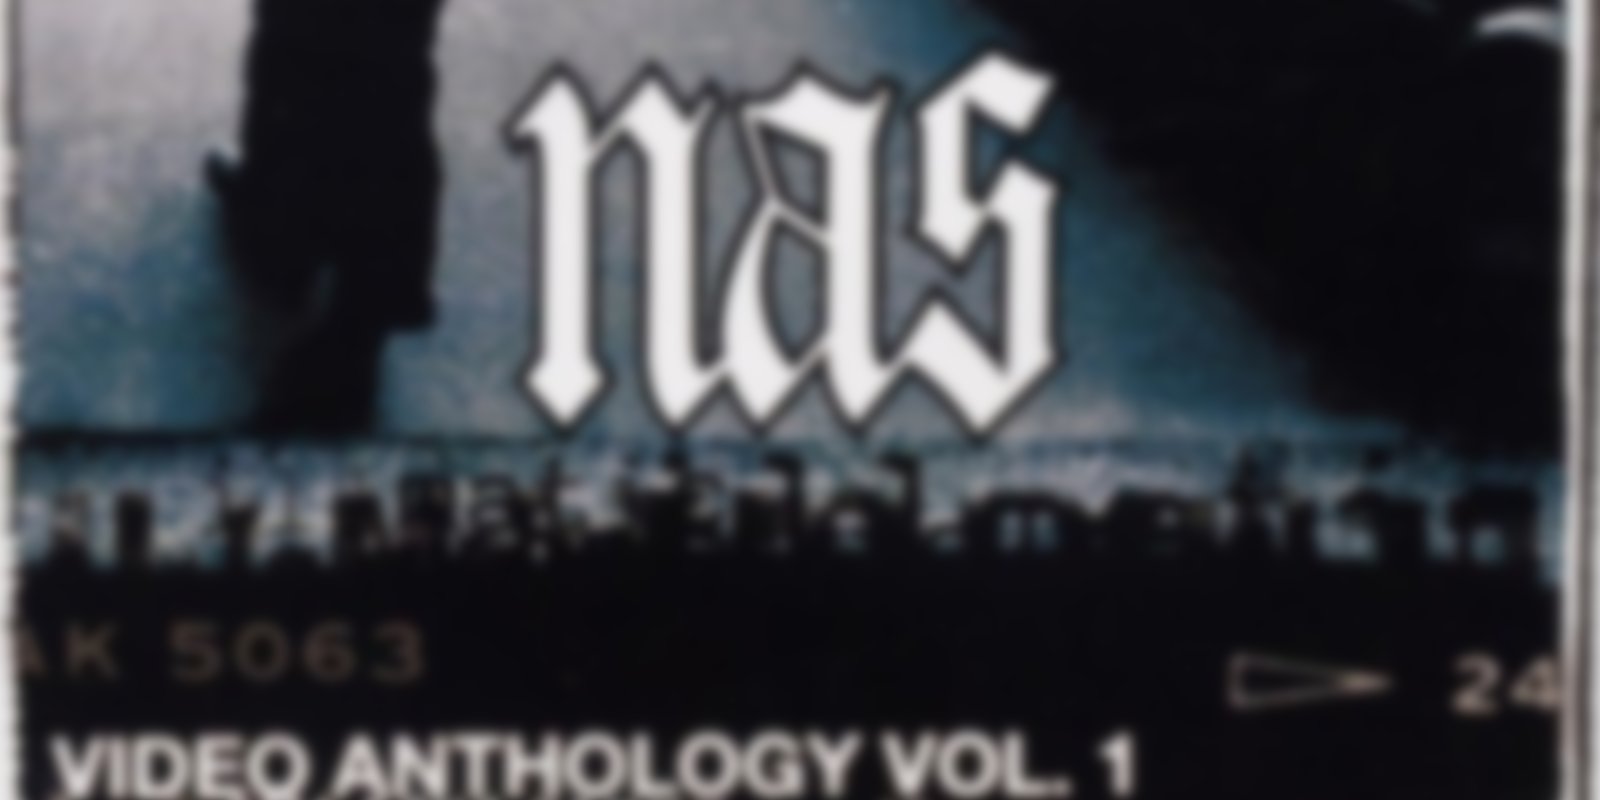 Nas - Video Anthology Vol. 1